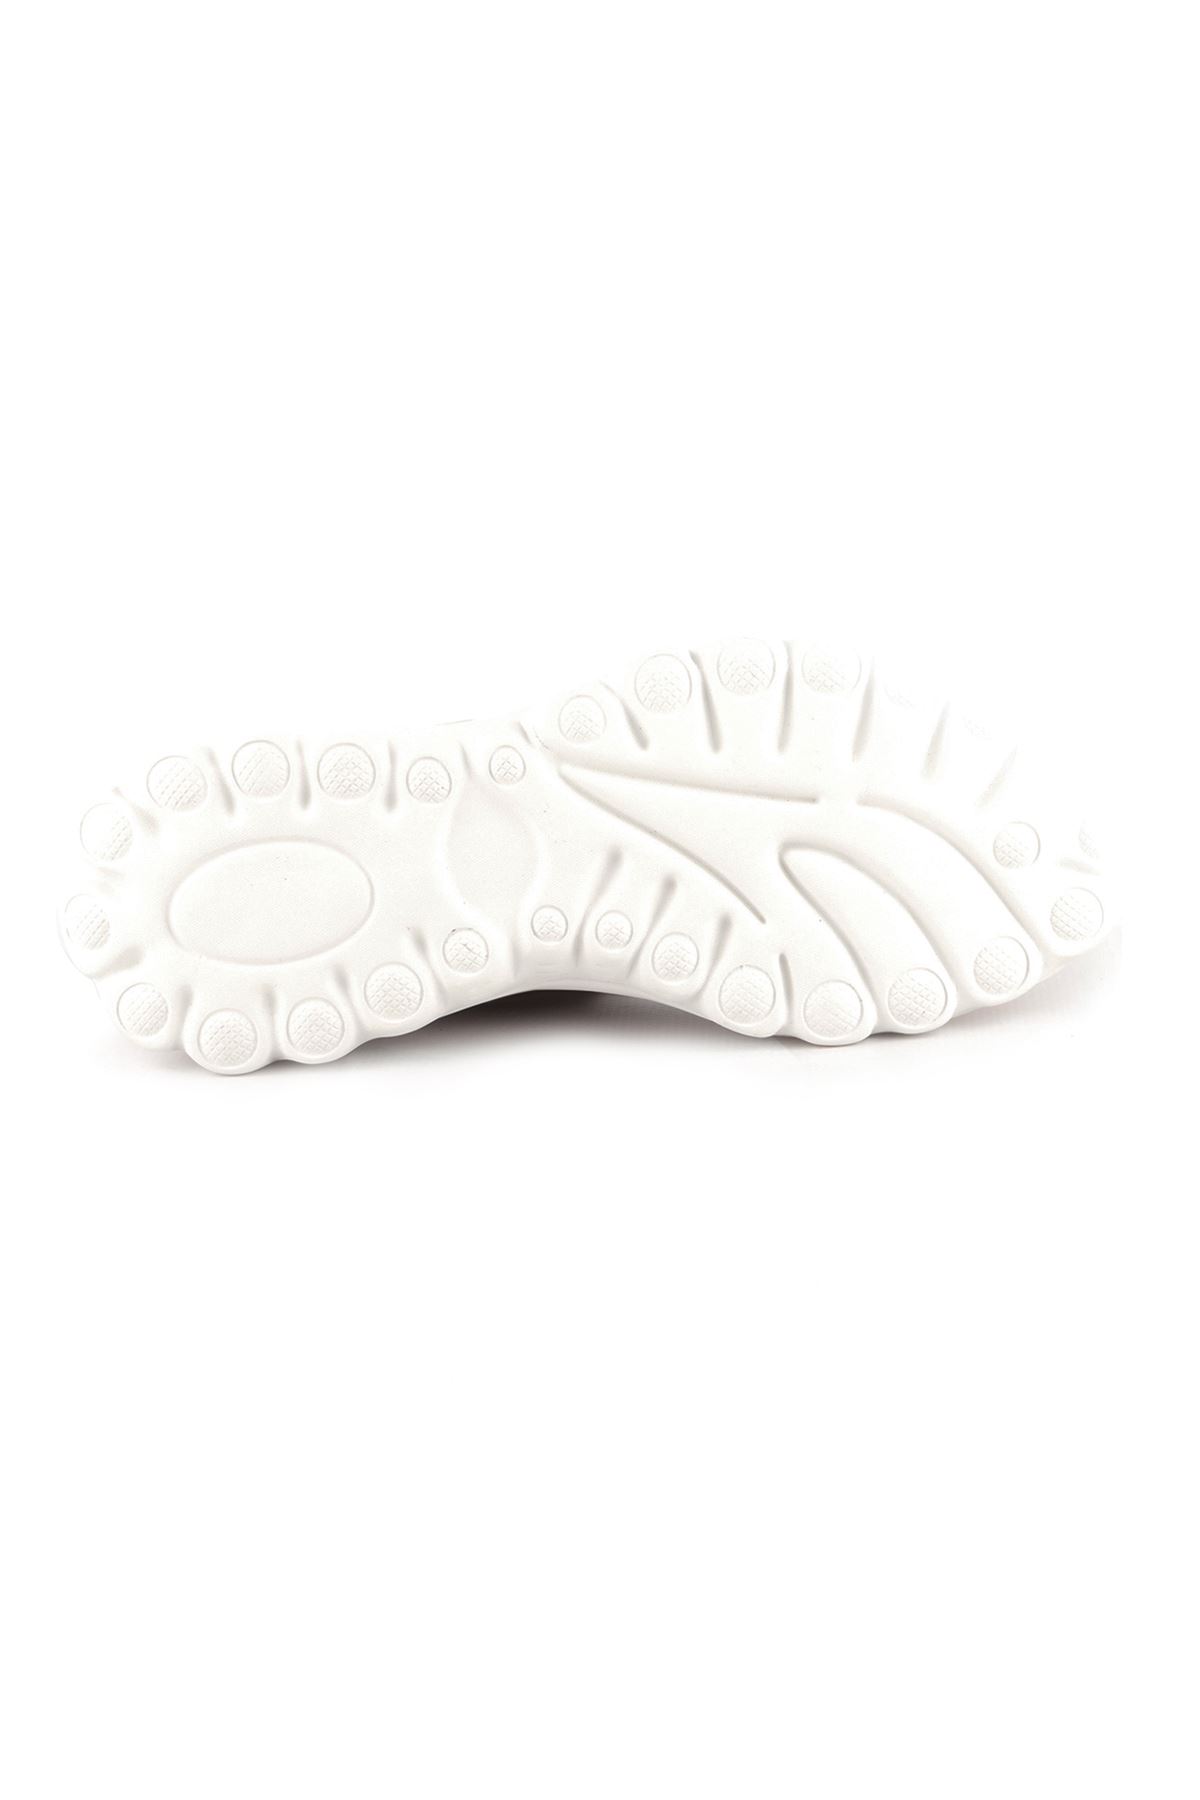 Libero Dİ2018 Beyaz Spor Ayakkabı 